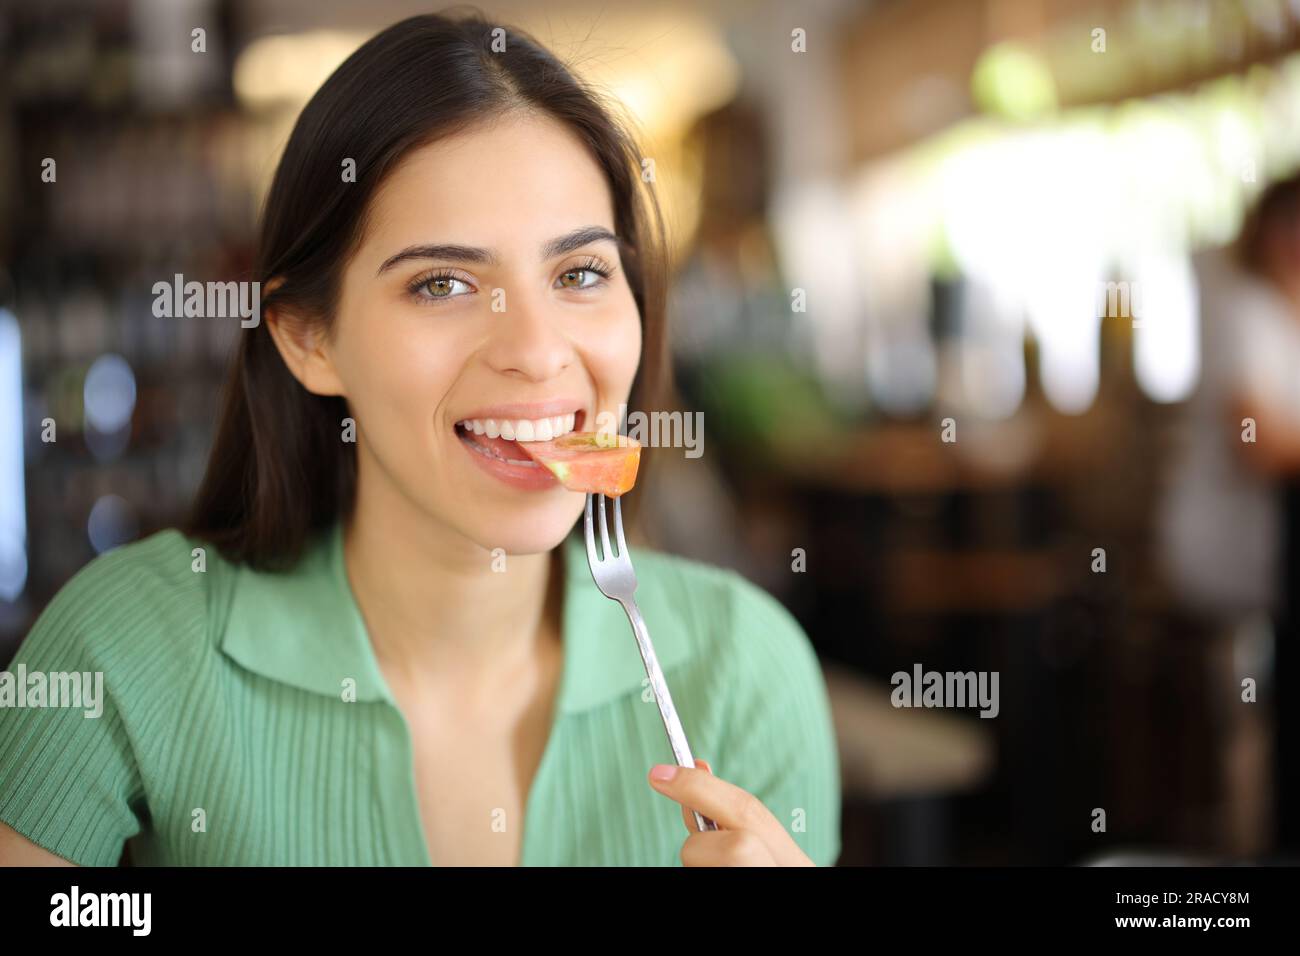 Un client satisfait du restaurant qui mange de la tomate en regardant un appareil photo Banque D'Images